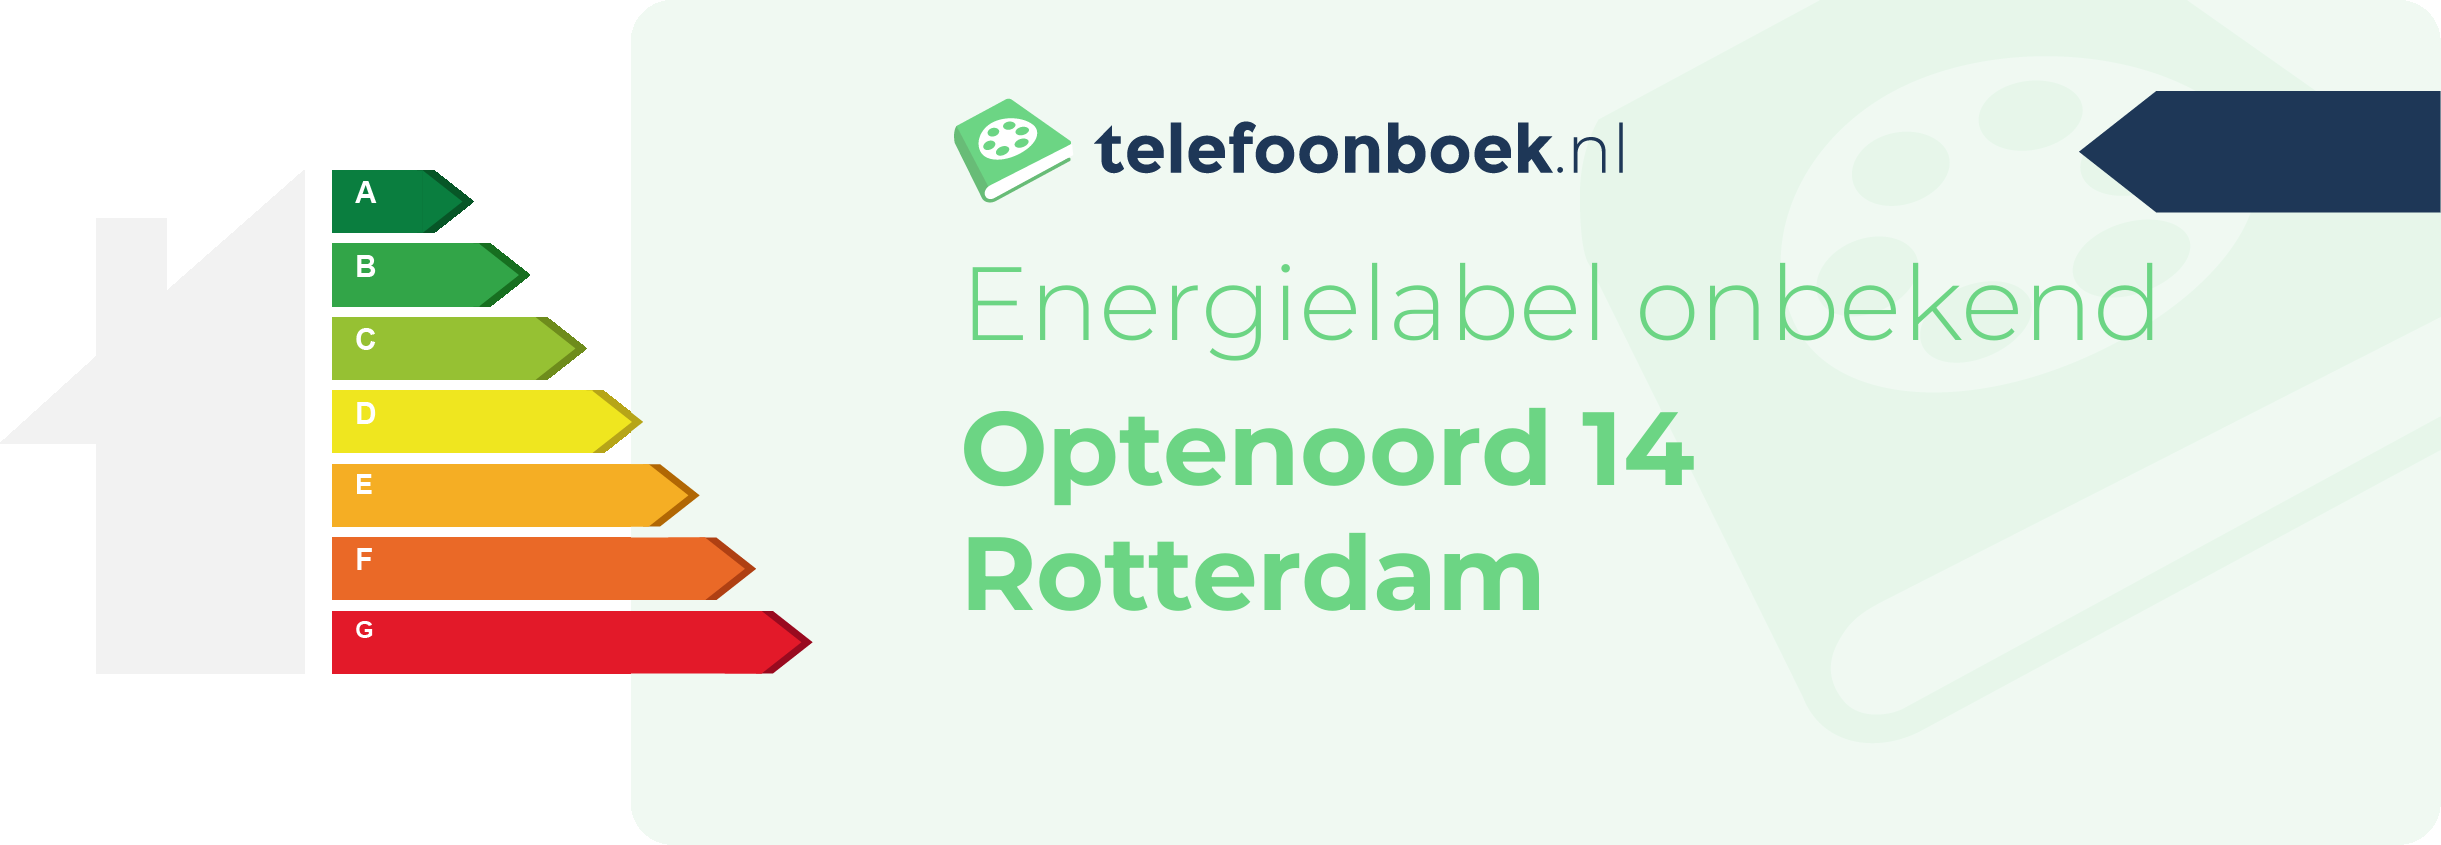 Energielabel Optenoord 14 Rotterdam